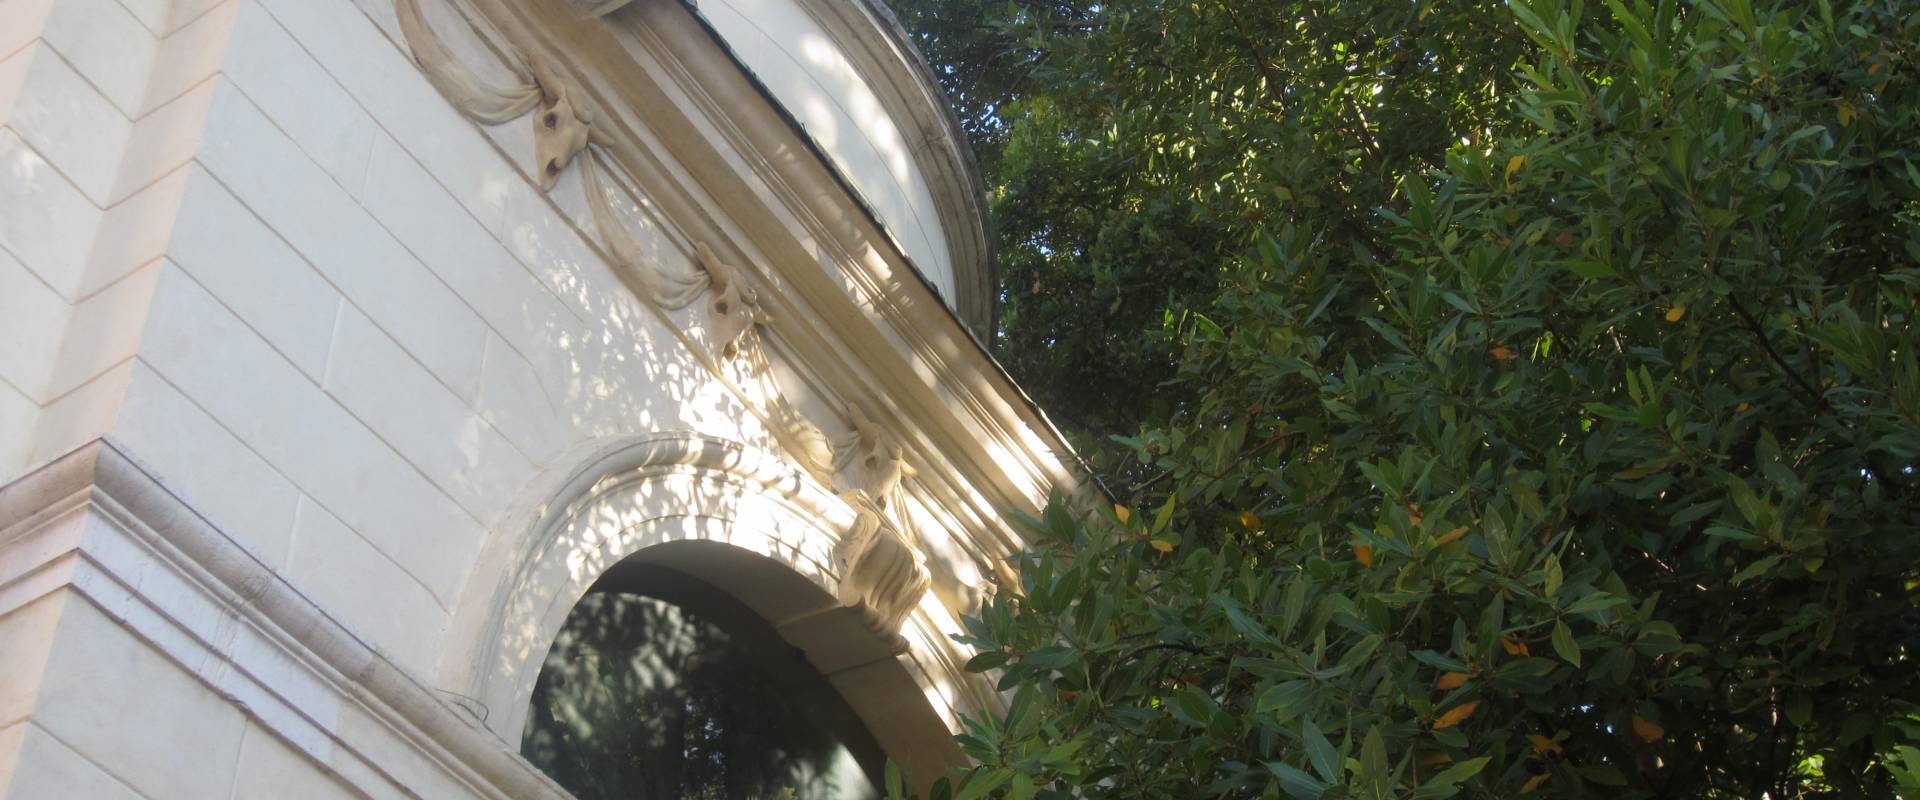 Tomba di Dante Alighieri - dettagli photo by Ebe94